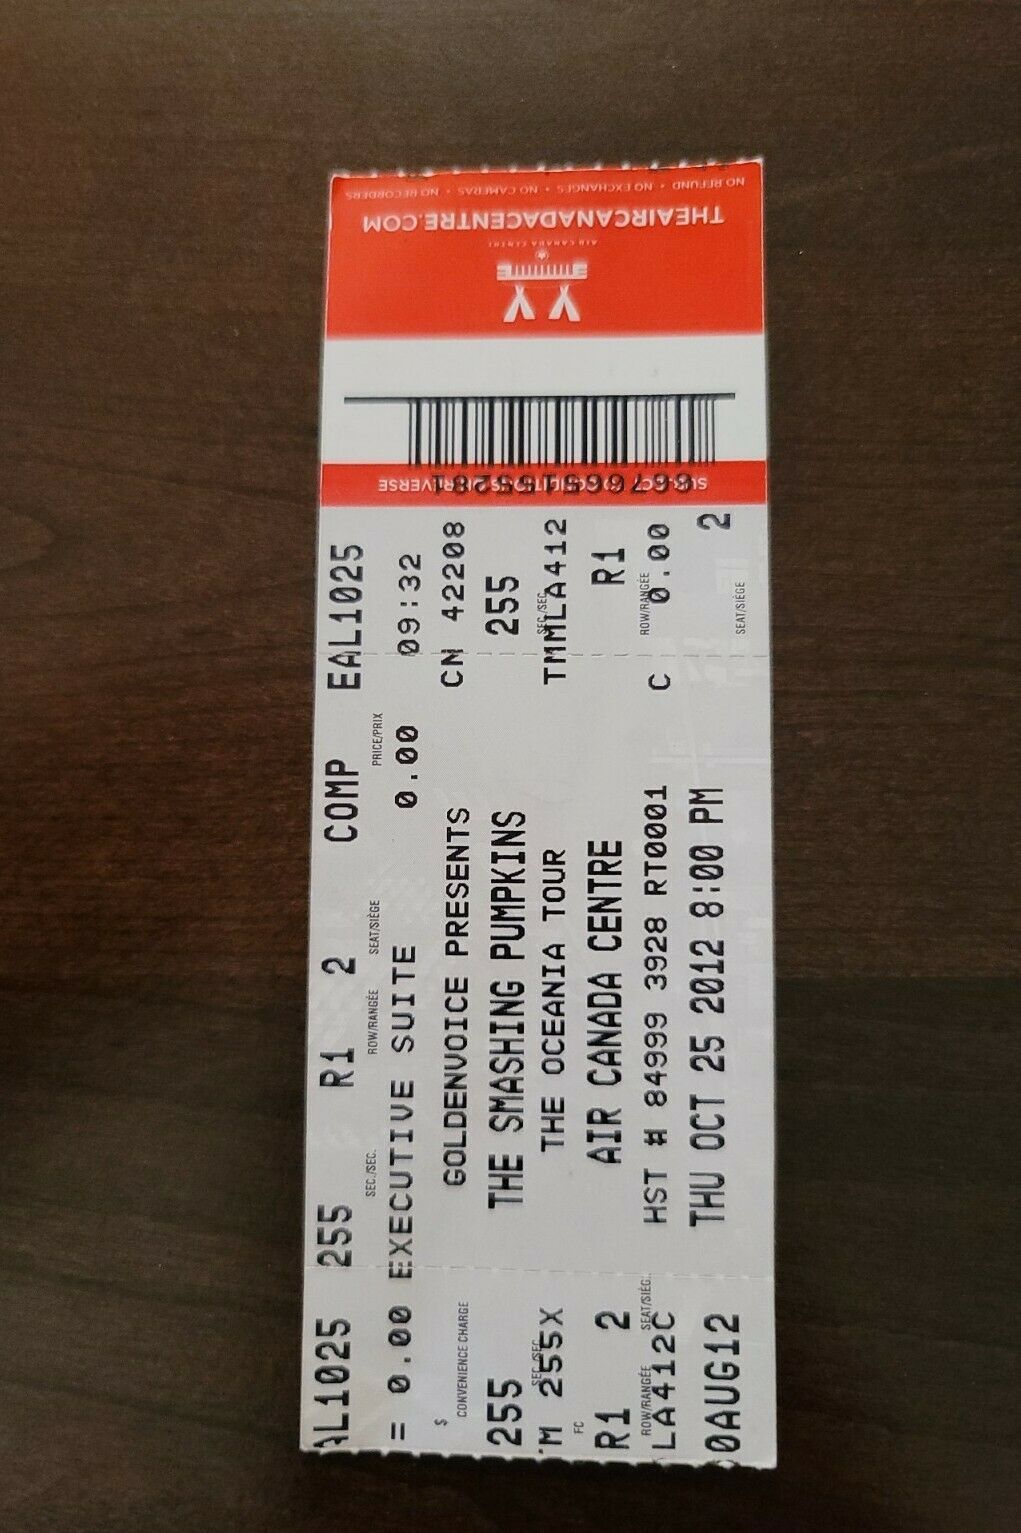 The Smashing Pumpkins 2012, Toronto Air Canada Centre Concert Ticket Stub